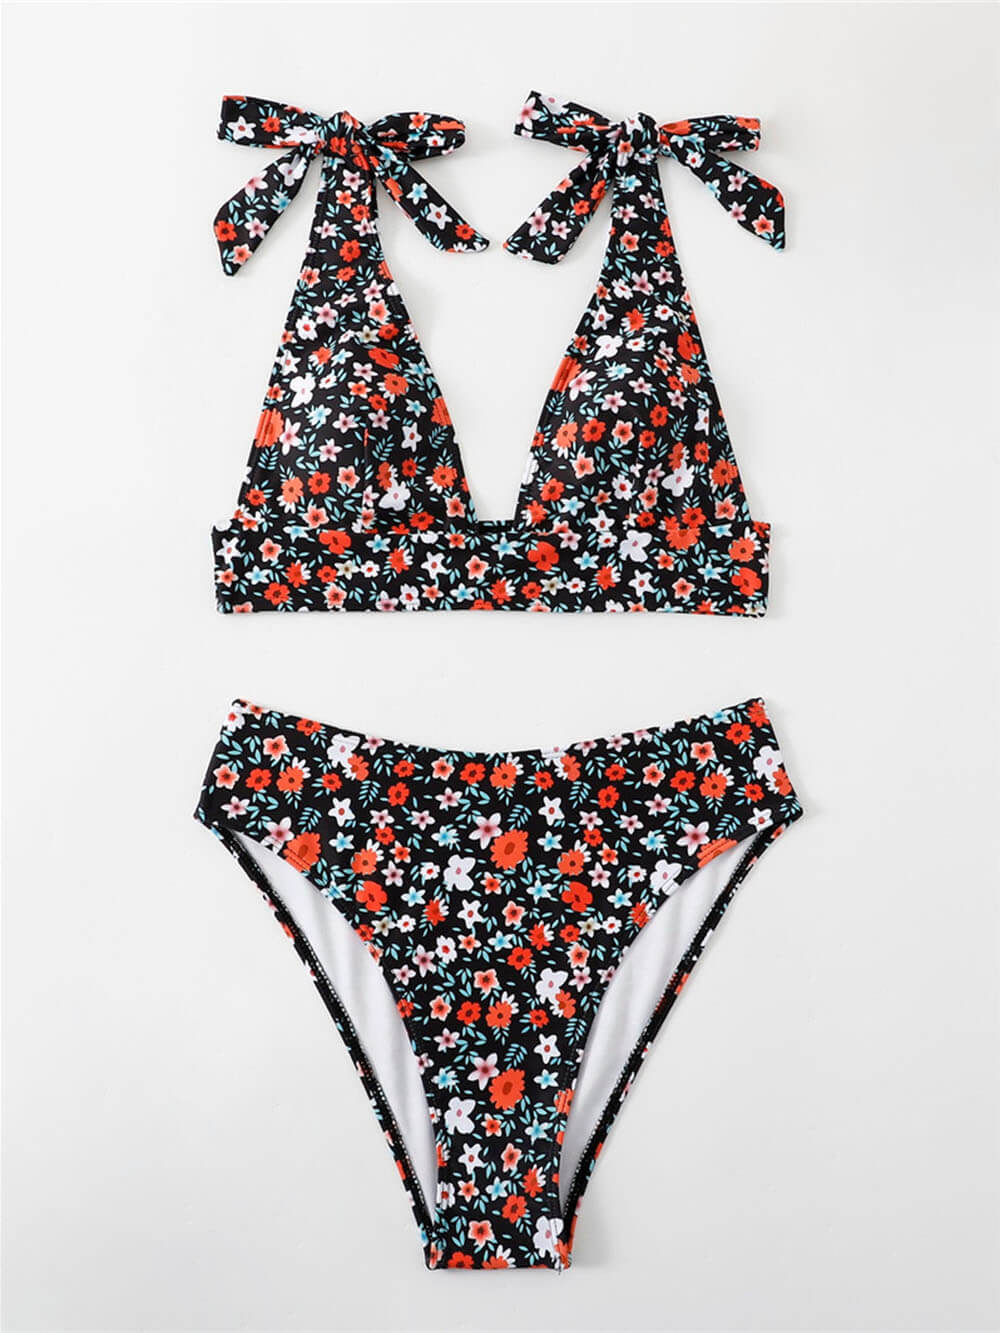 Sexy bedrucktes Bikini-Set mit Blumenmuster und Knöpfen